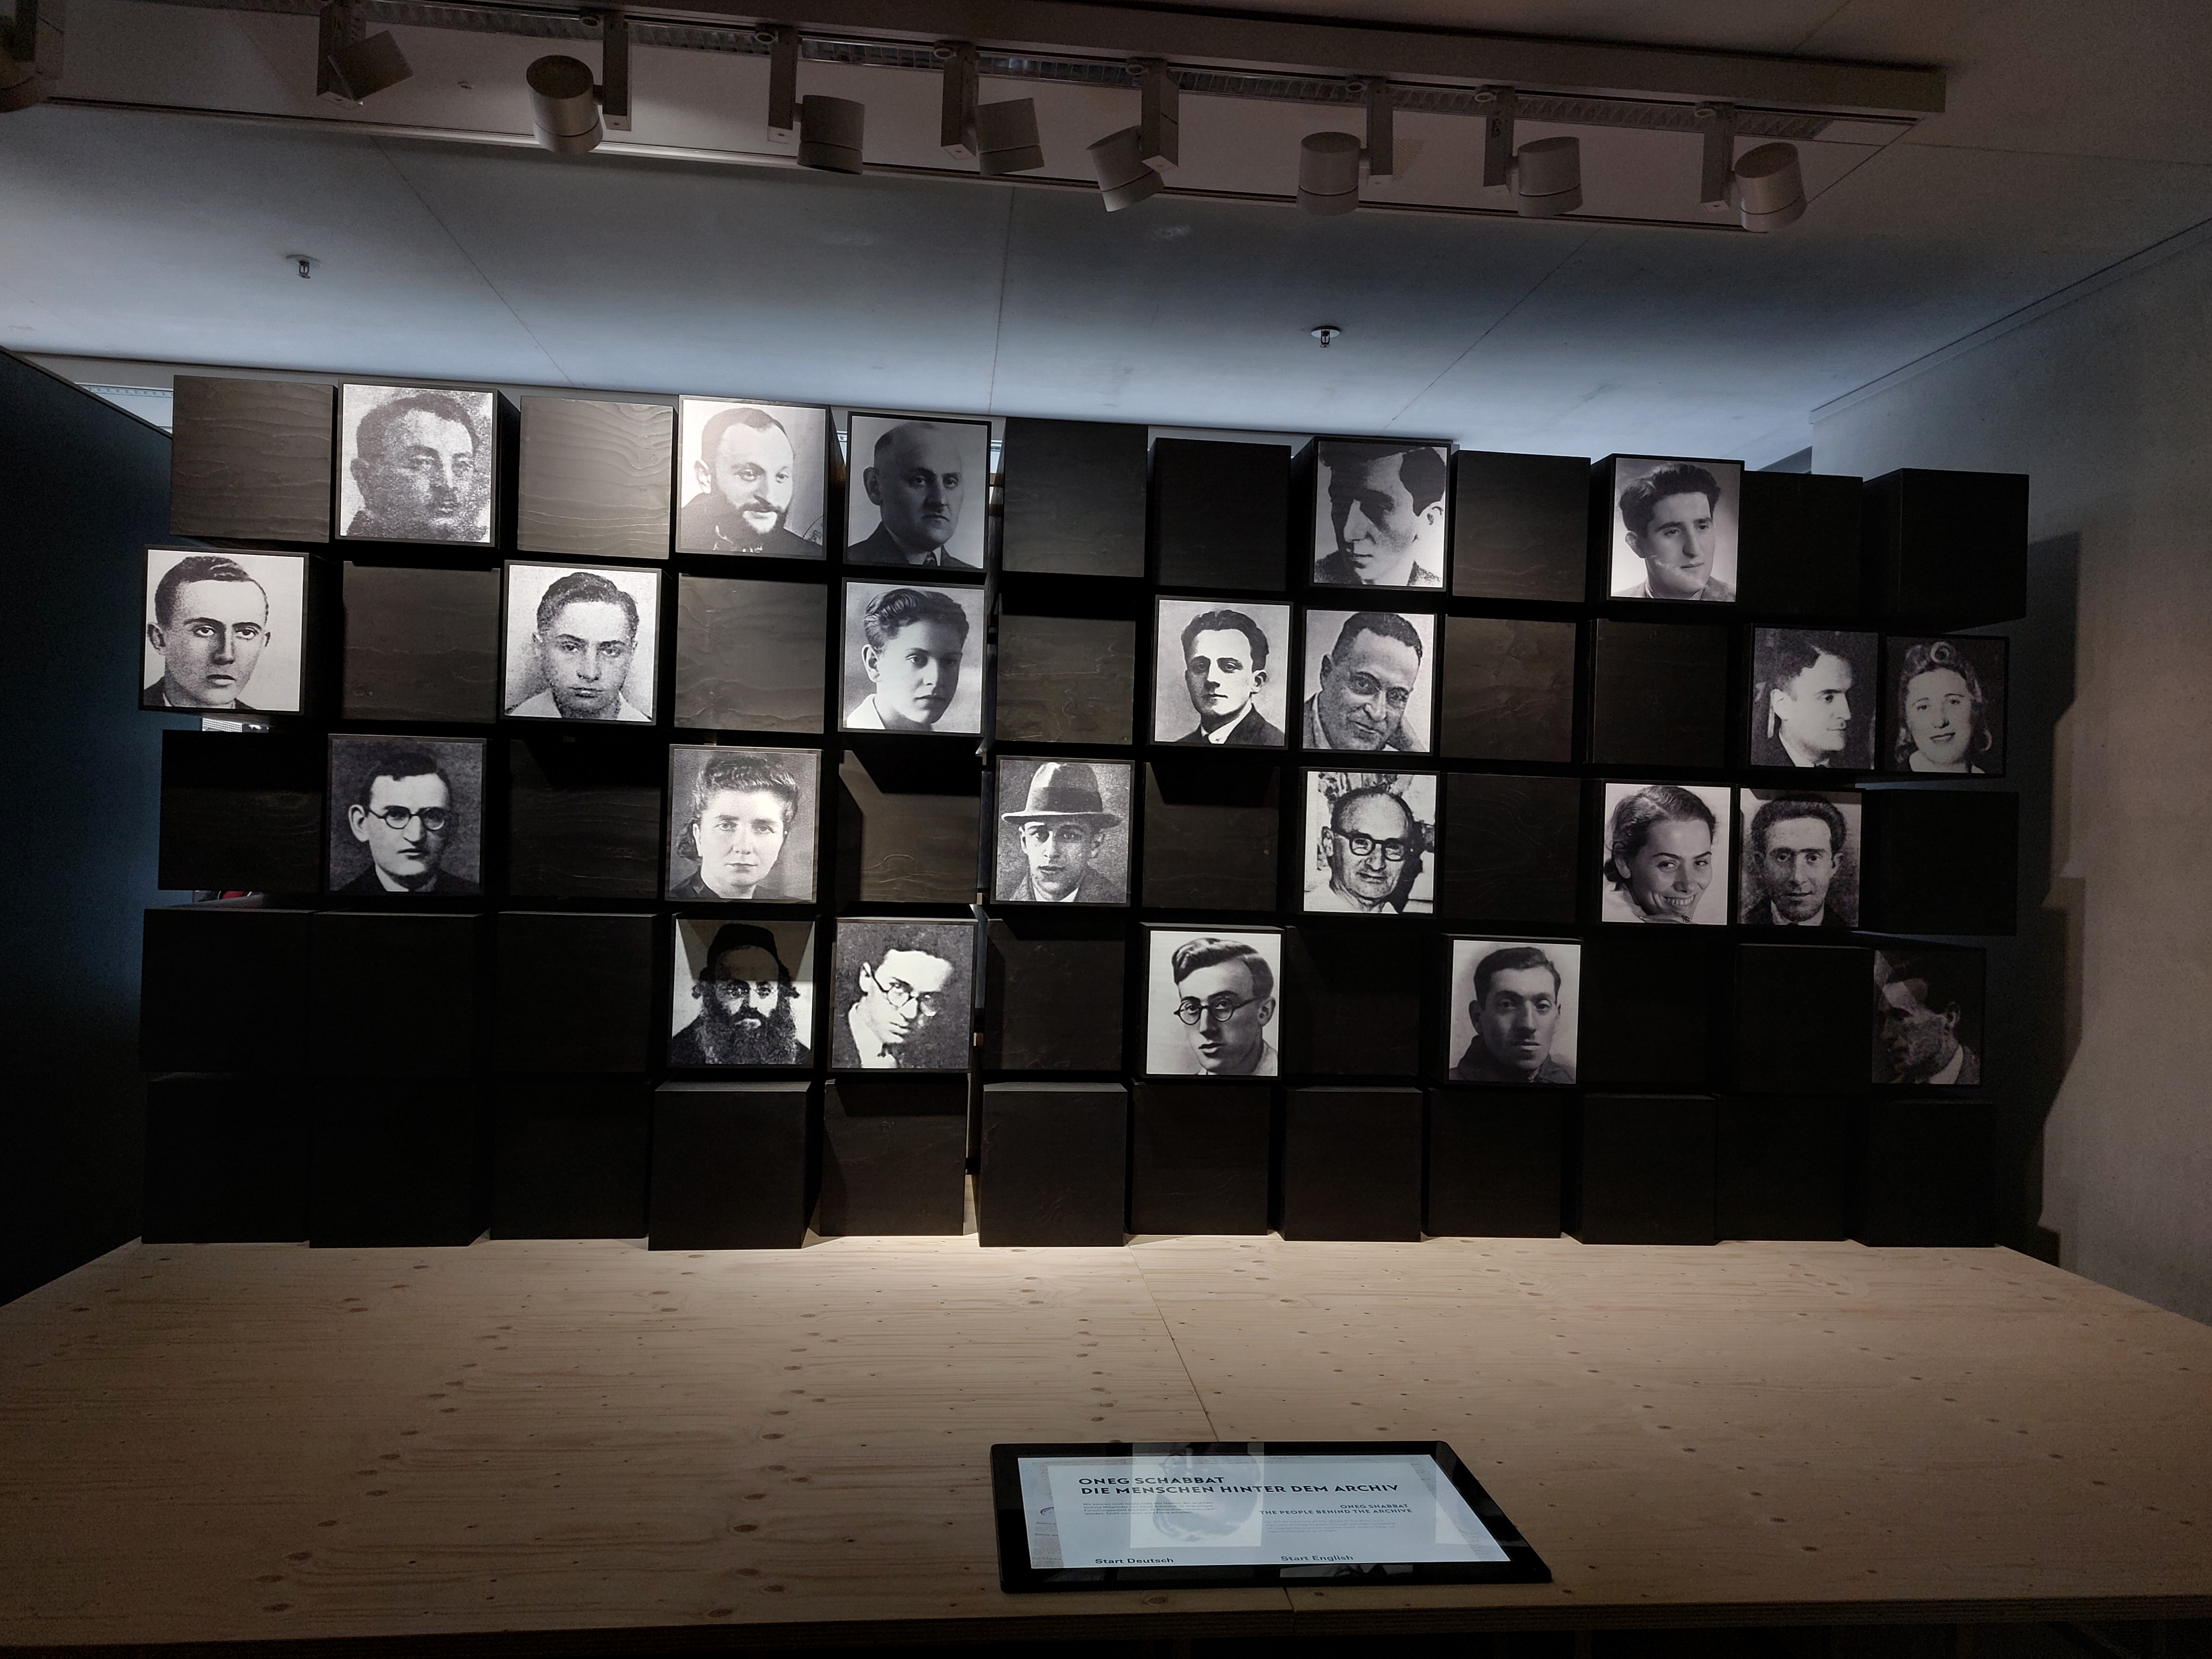 Fotowand mit Bildern der Gruppe Oneg Shabbat bestehend aus Frauen- und Männerportraits. Dazwischen sind schwarze leere Kästen, die die unbekannten Mitglieder symbolisieren.